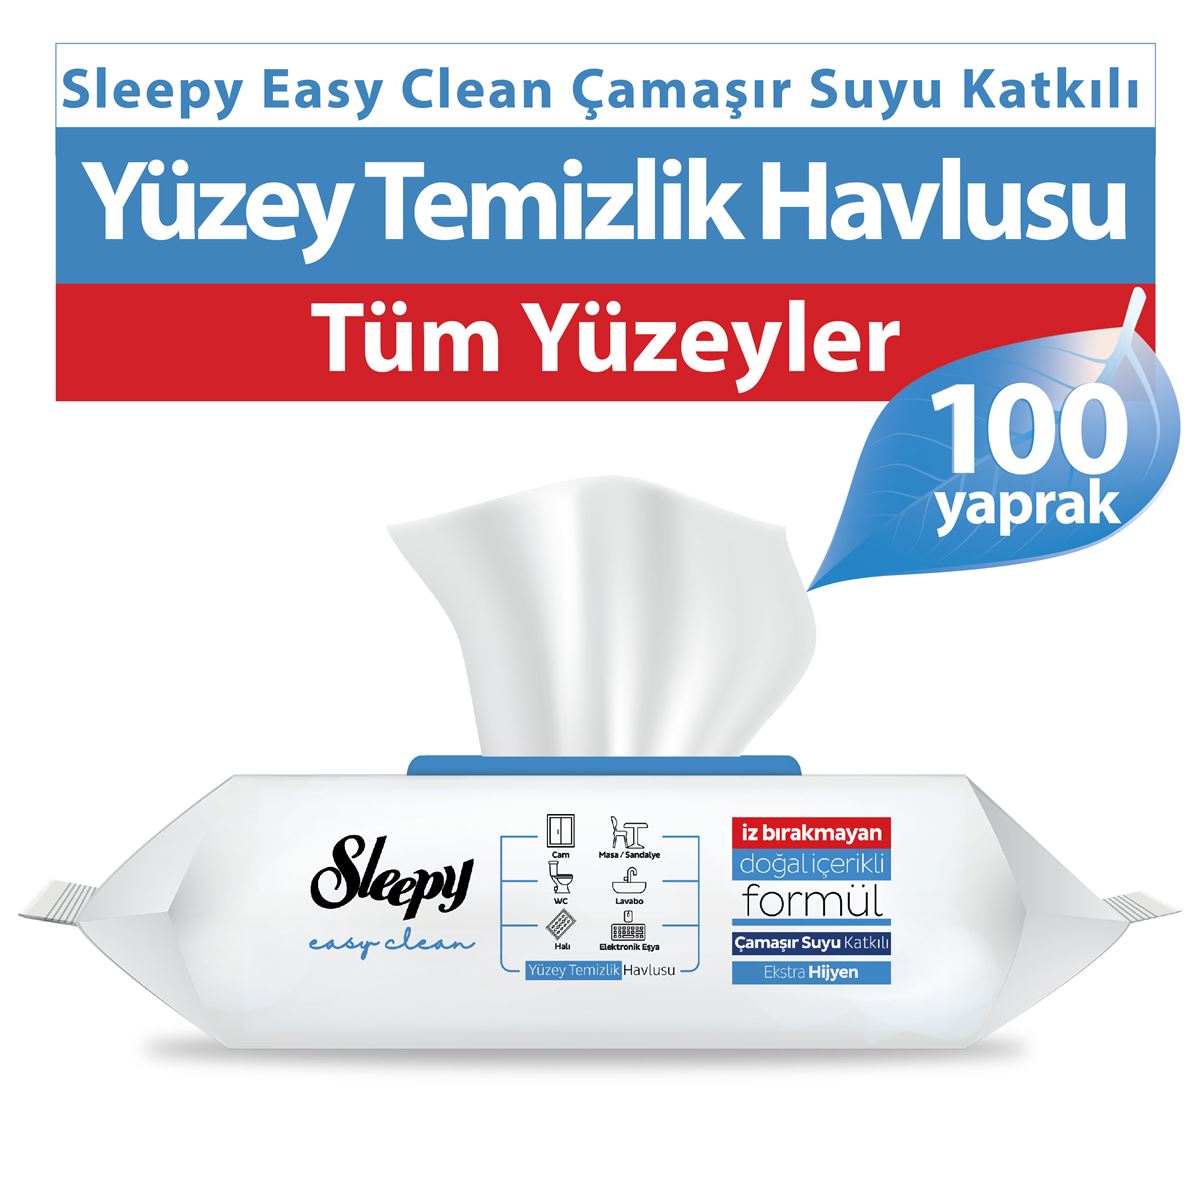 Sleepy Easy Clean Çamaşır Suyu Katkılı Yüzey Temizlik Havlusu 100 Yaprak 12 Paket